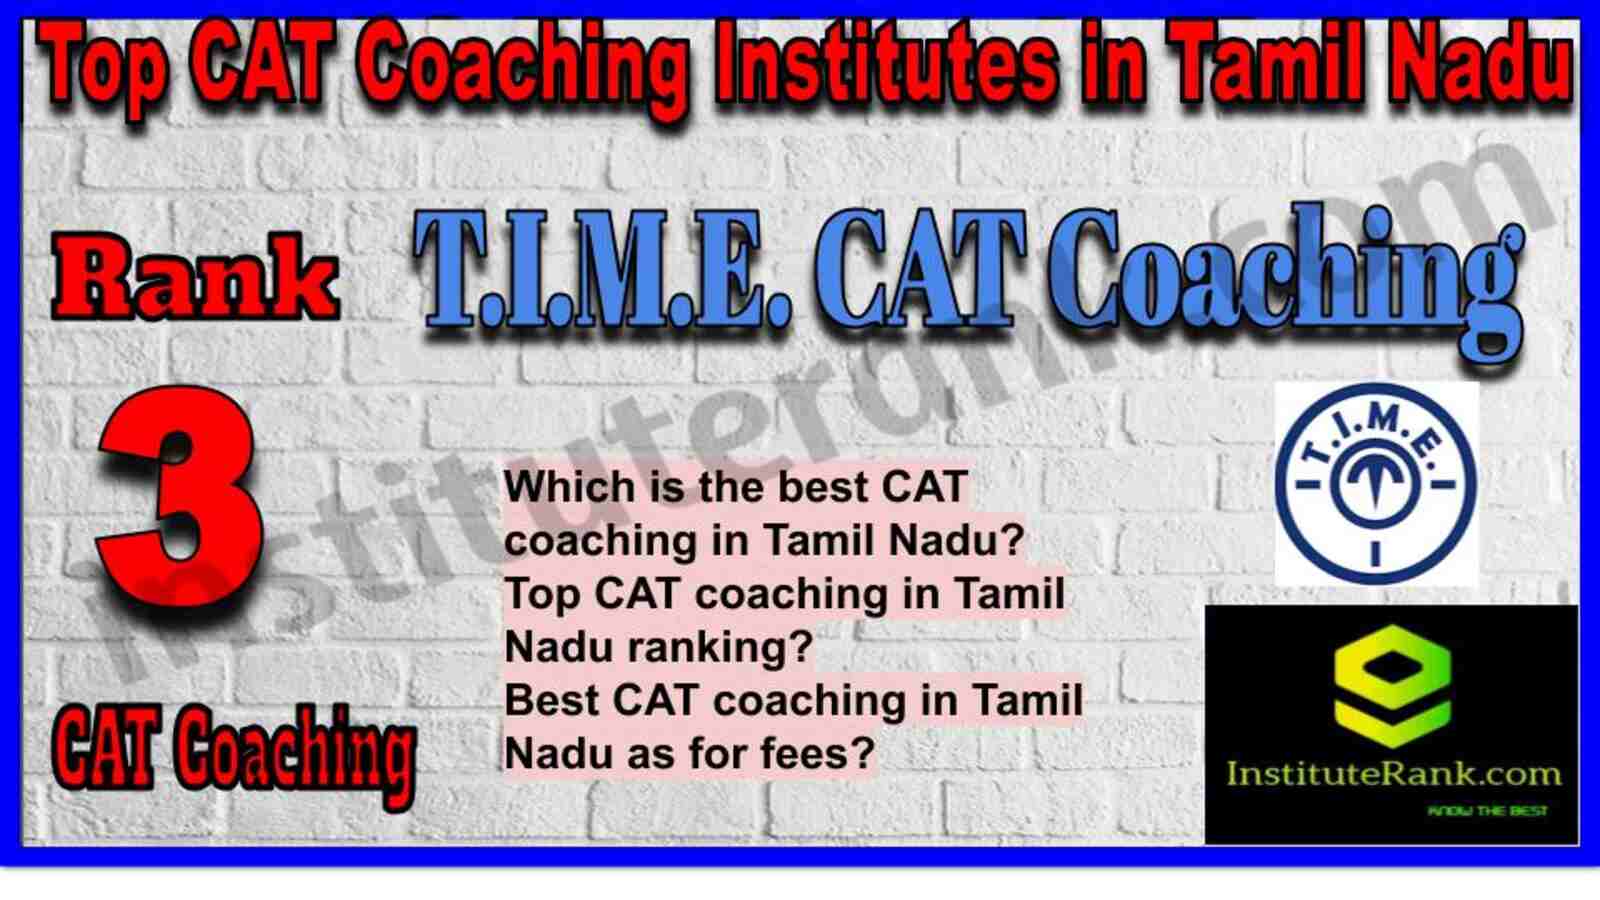 Rank 3. T.I.M.E. CAT Coaching Institute in Tamil Nadu